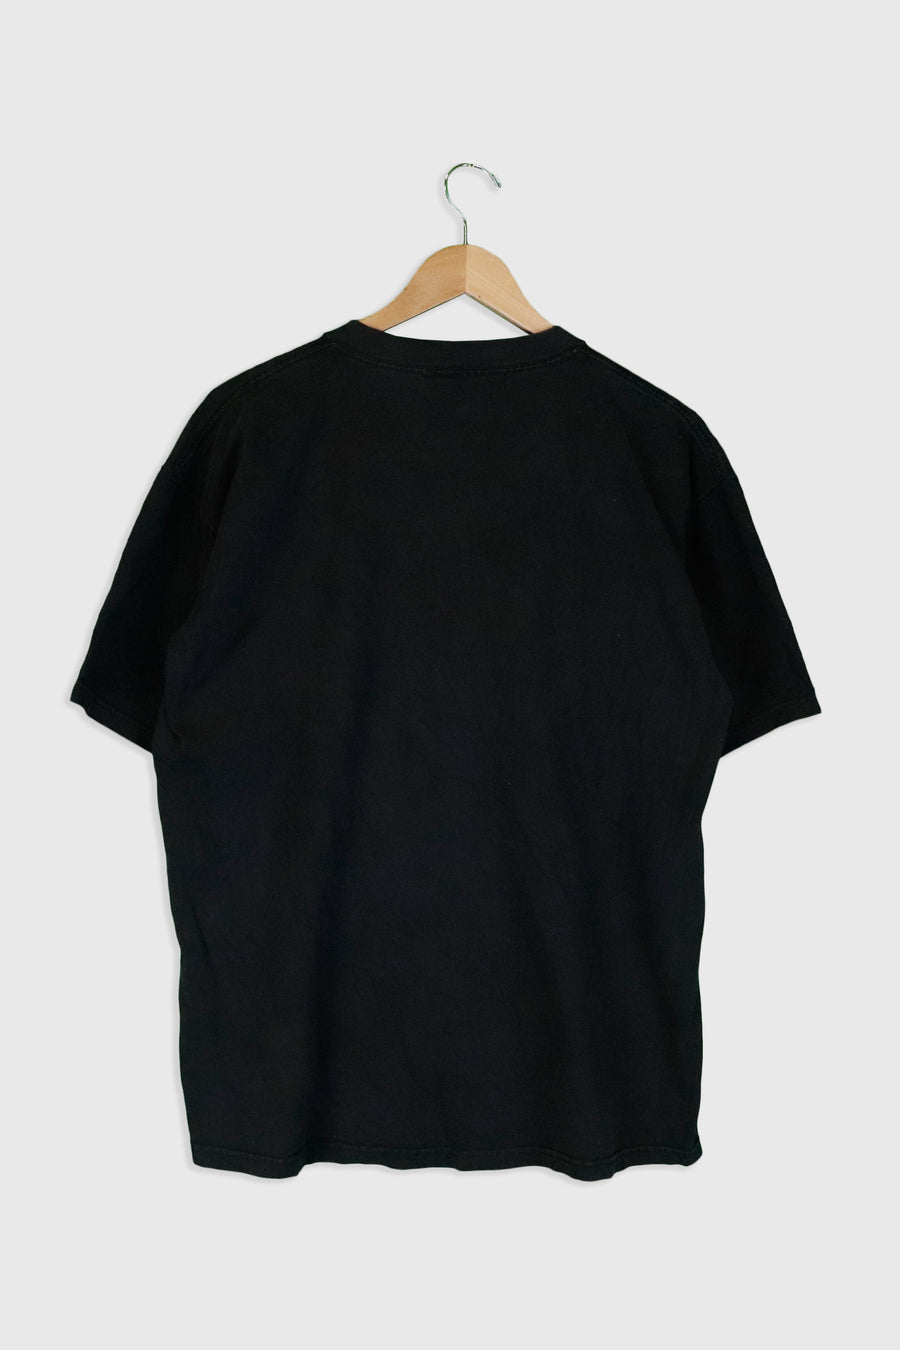 Vintage The Osbourne Family T Shirt Sz XL